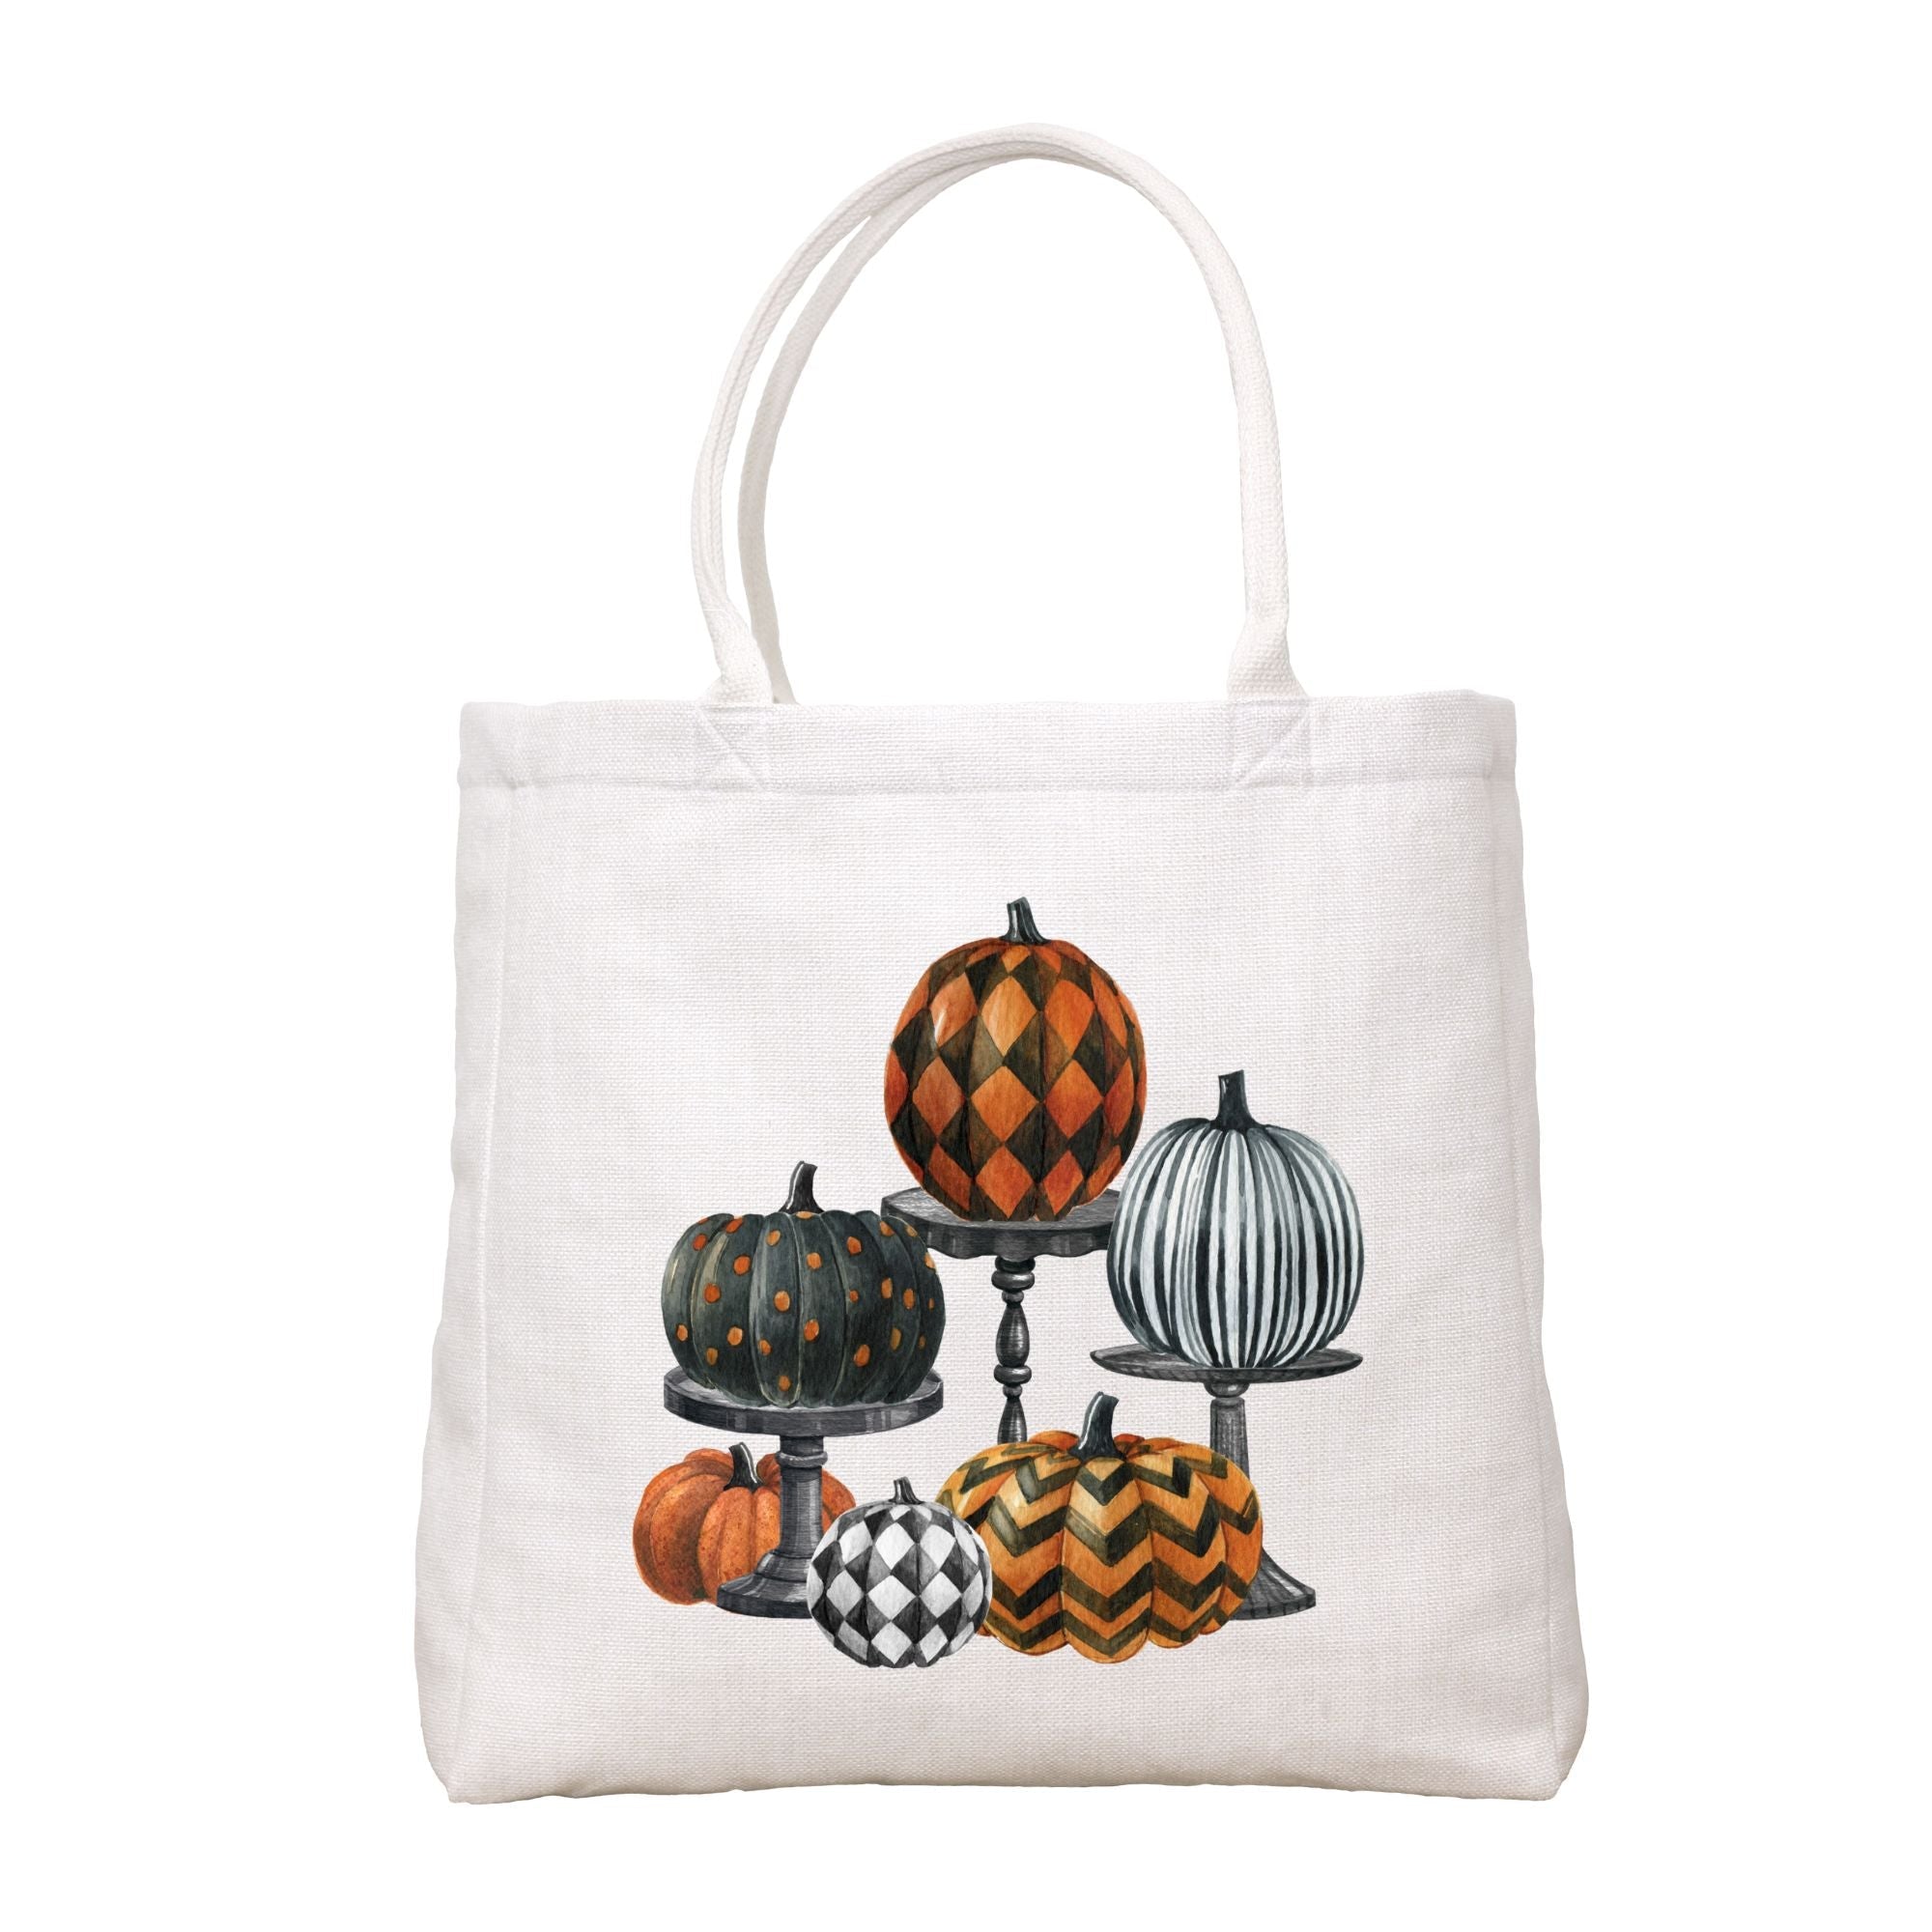 Pumpkins On Pedestals Tote Bag